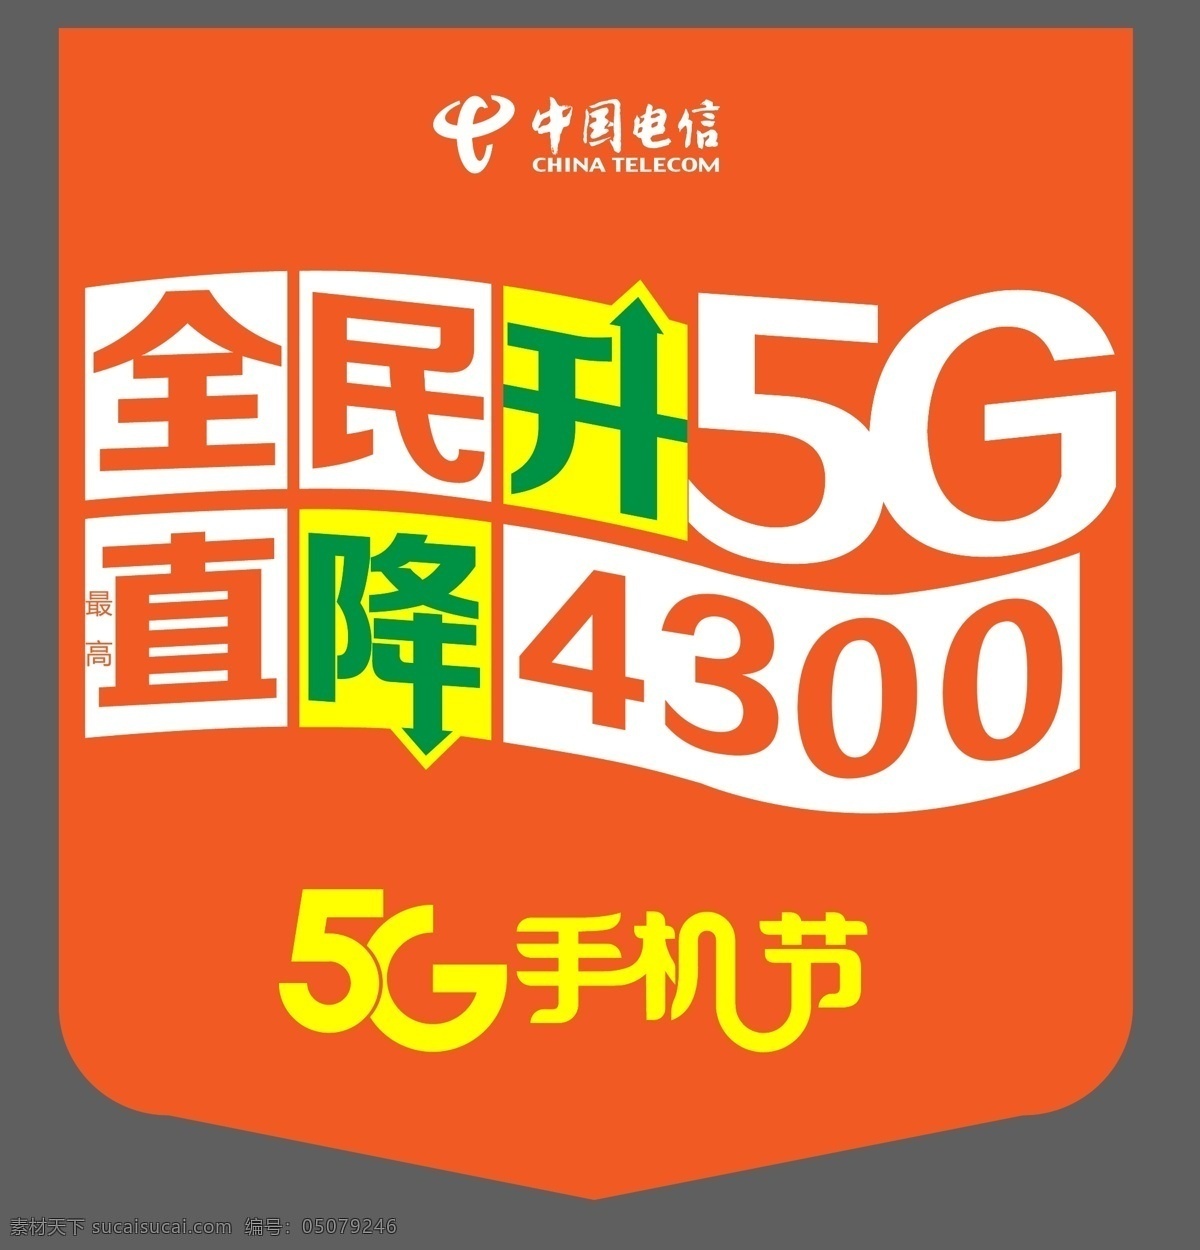 中国电信图片 中国电信 5g 全民升5g 5g手机节 手机 电信logo